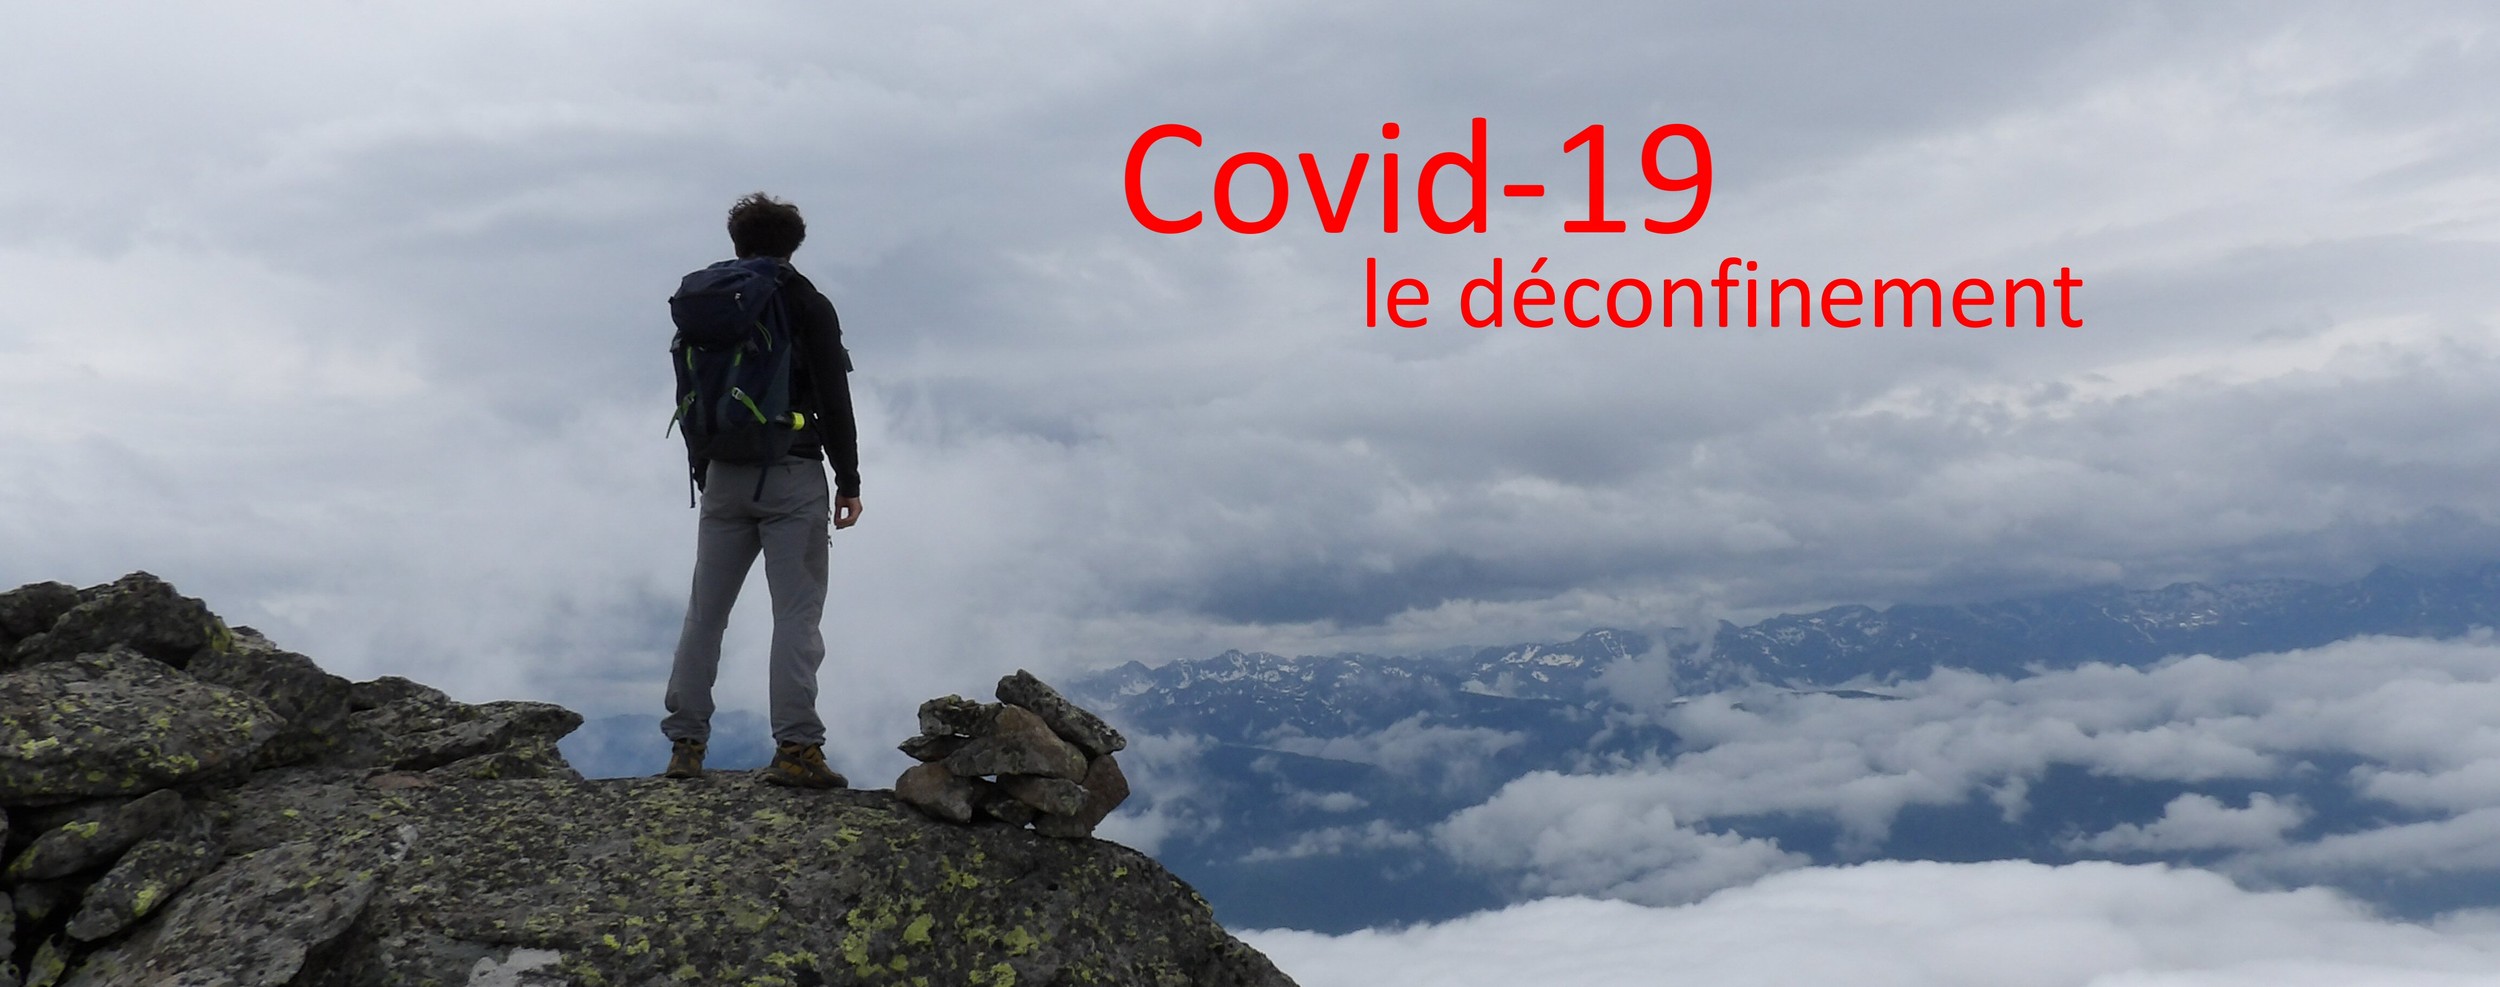 Covid-19 Activité sport montagne